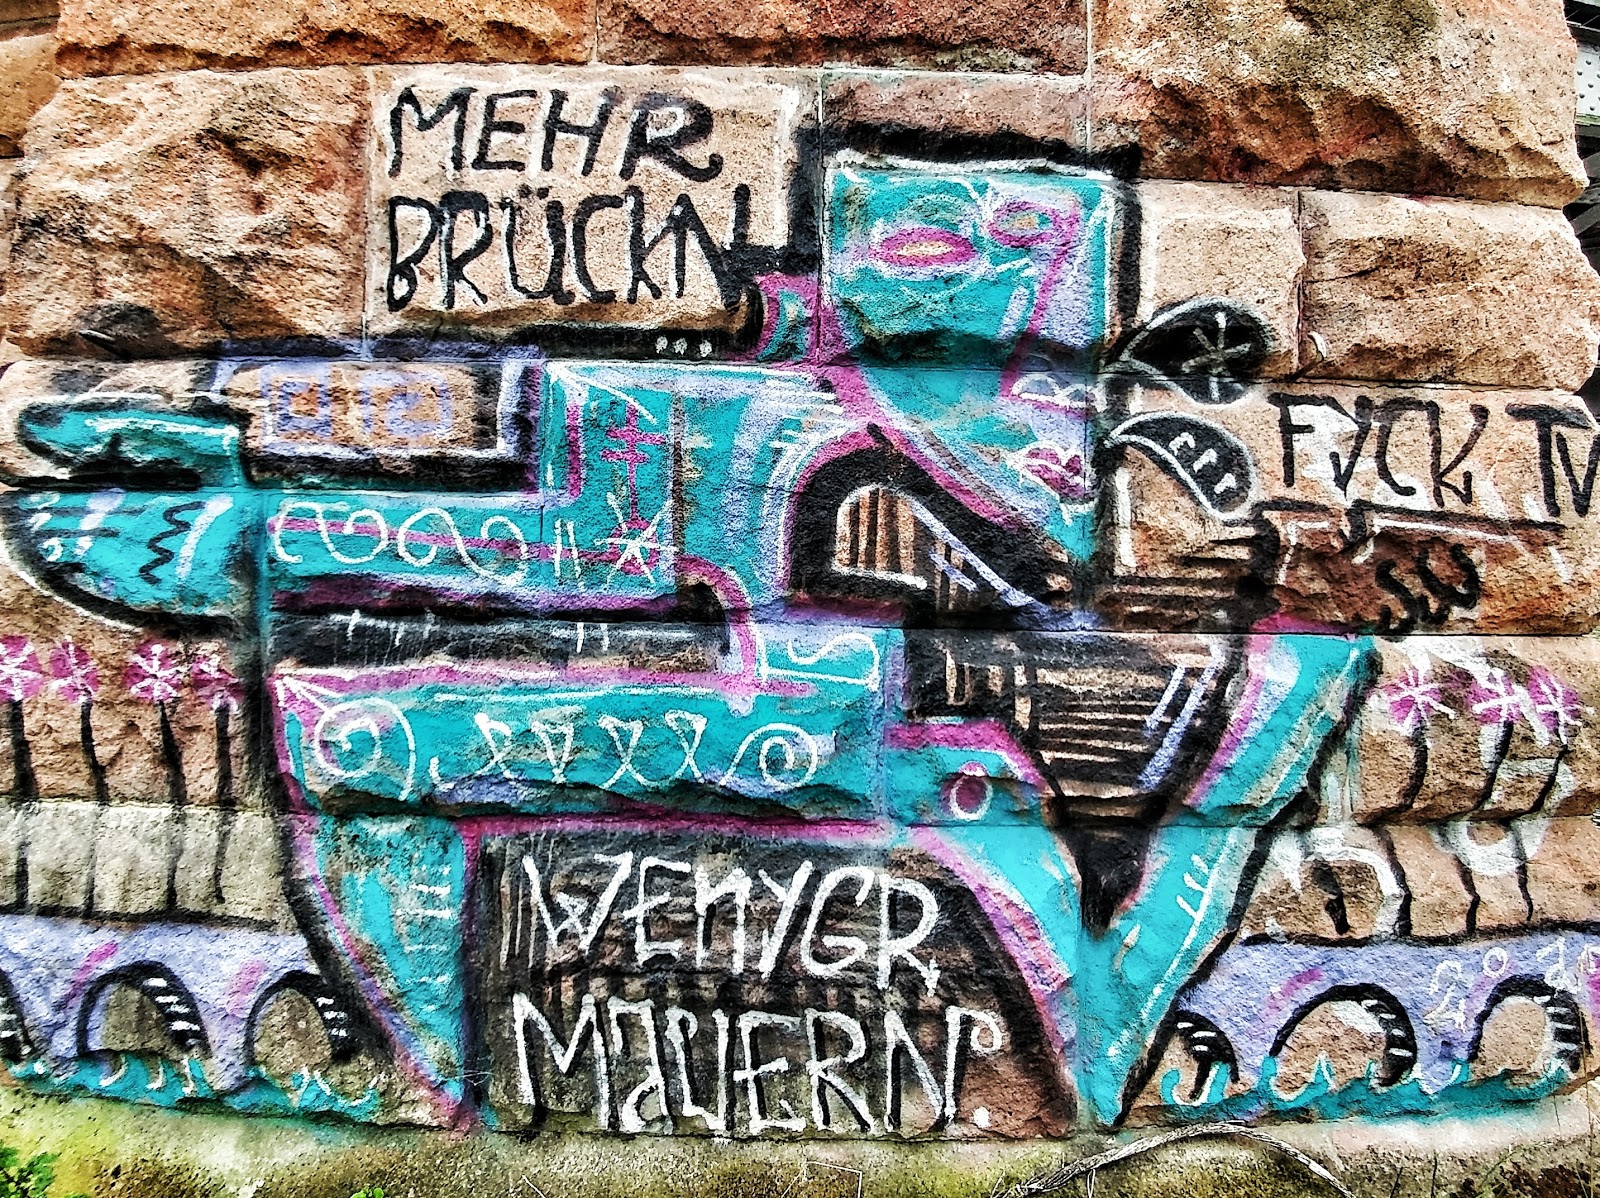 Ritebook Berlin Wall Berliner Mauer Germany